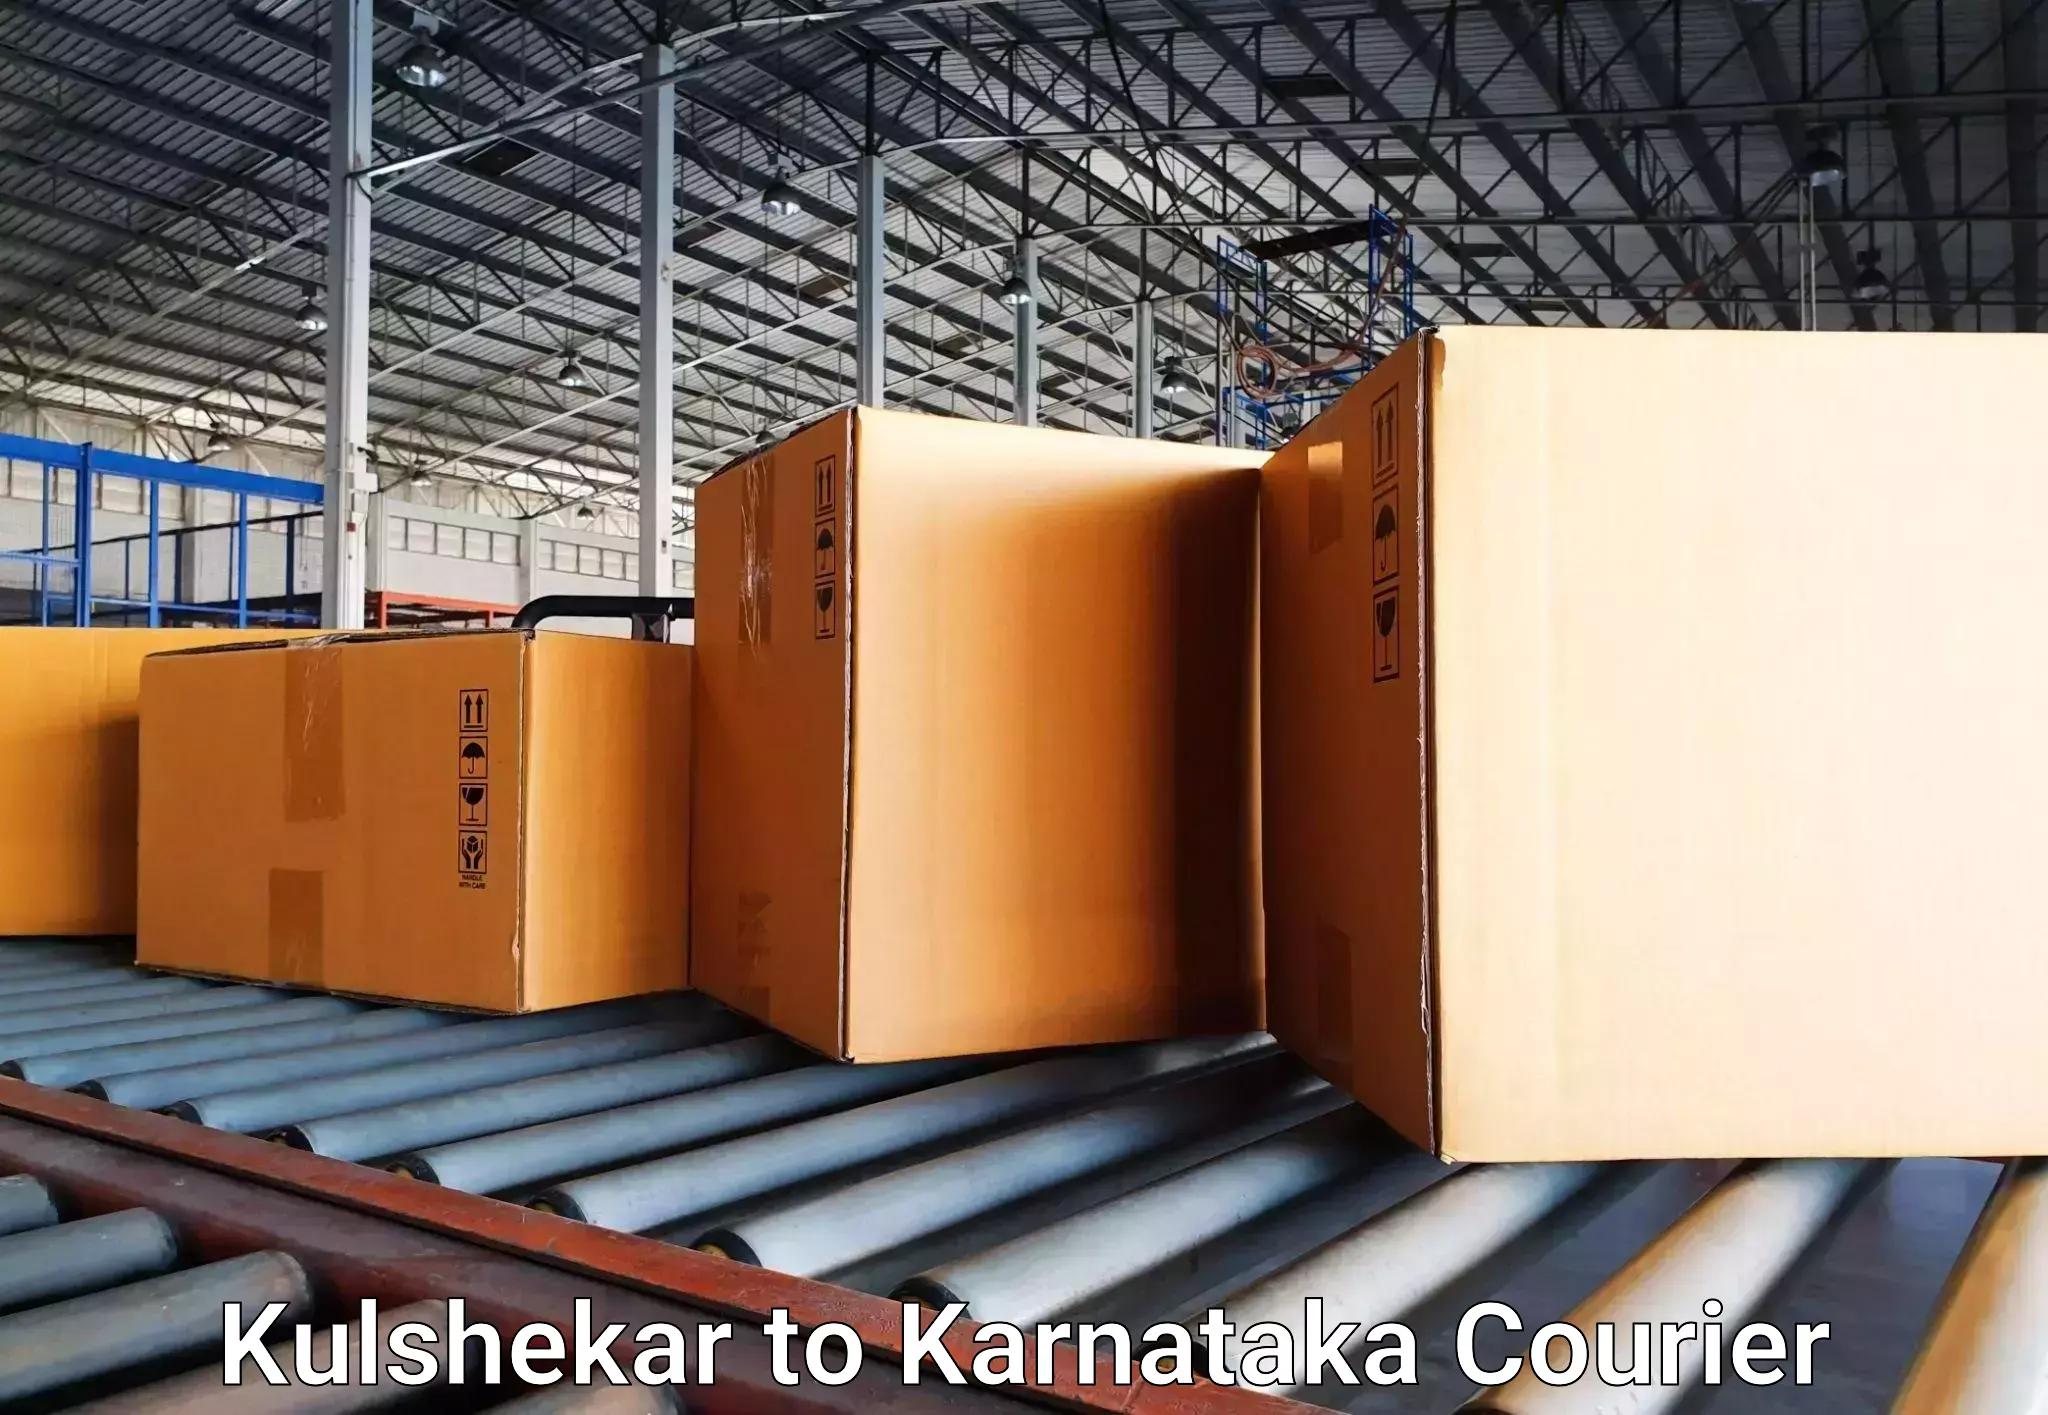 Efficient baggage transport in Kulshekar to Aland Kalaburagi